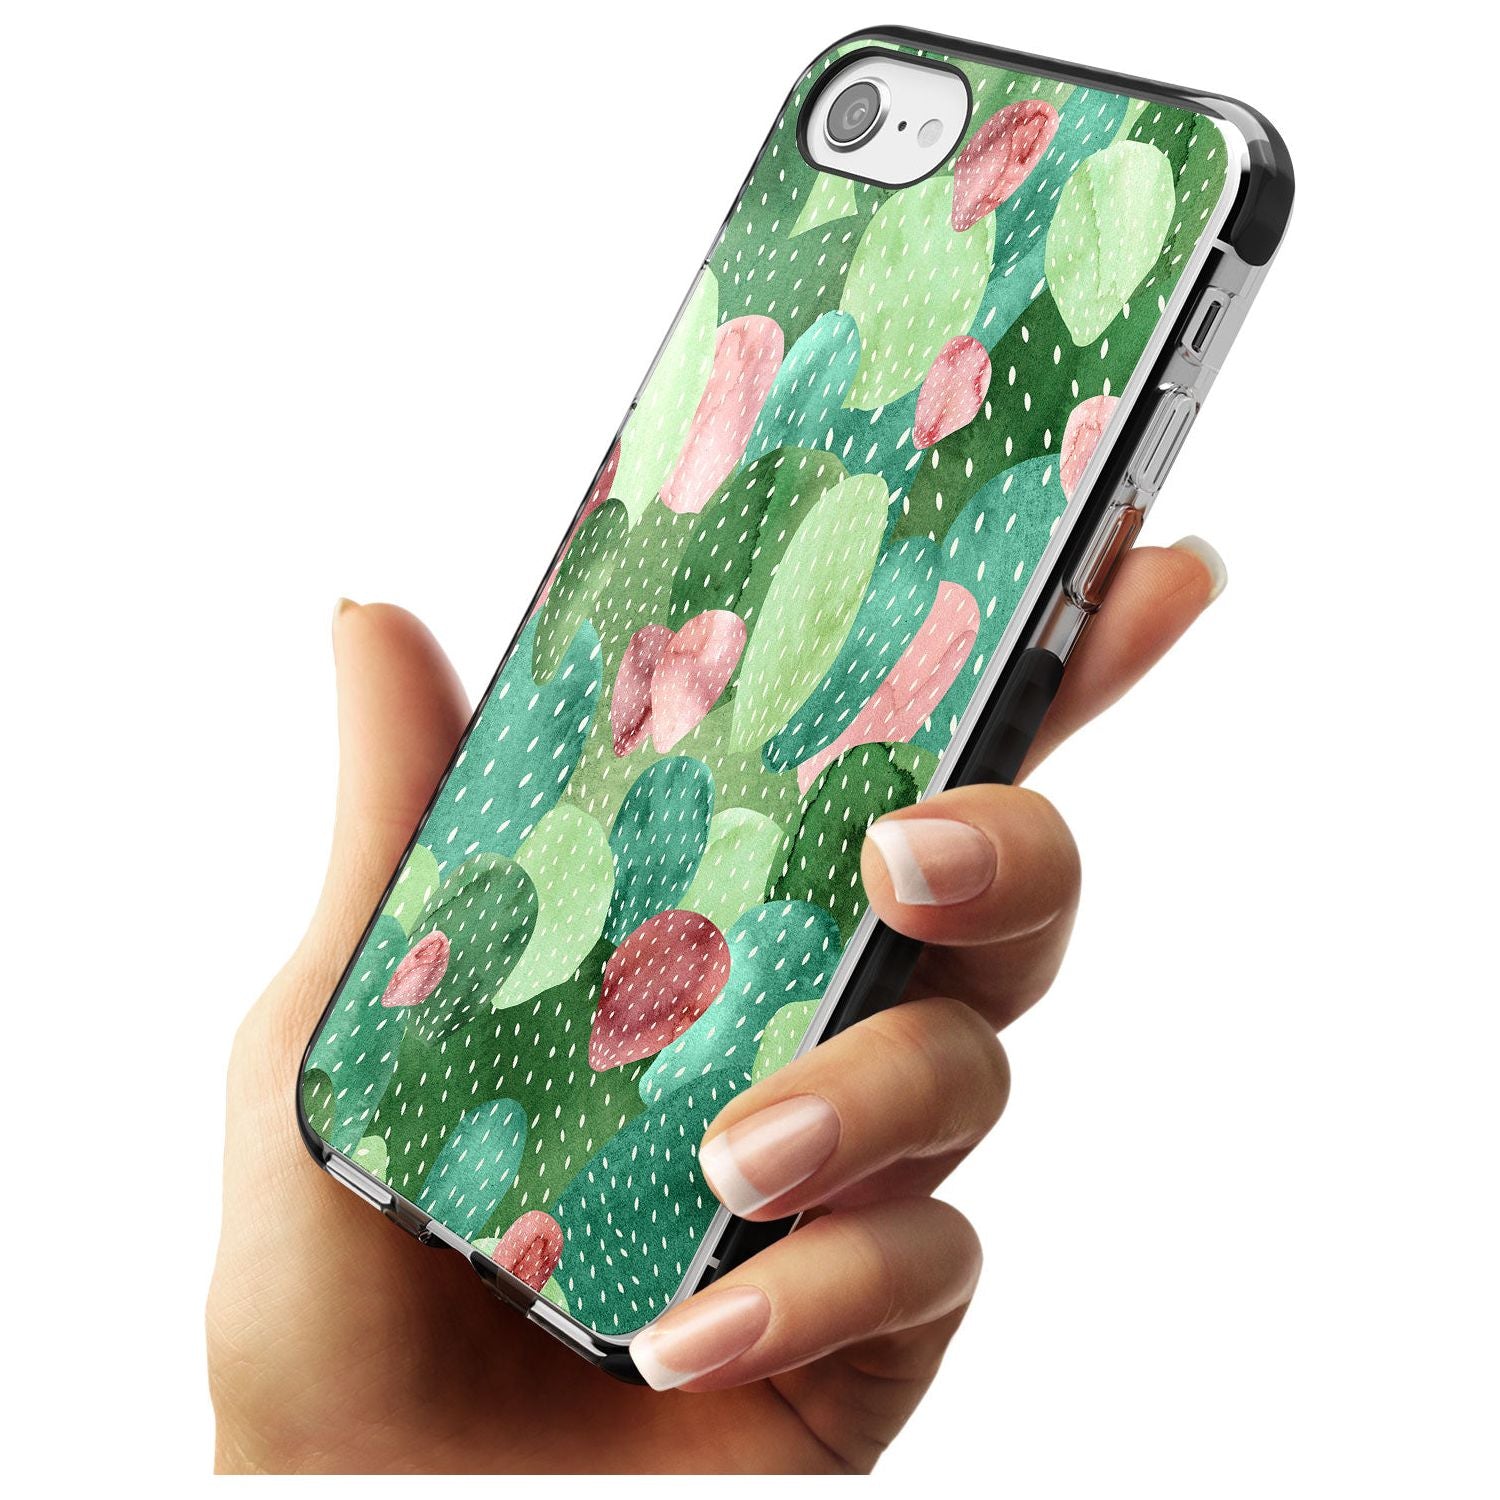 Colourful Cactus Mix Design Black Impact Phone Case for iPhone SE 8 7 Plus